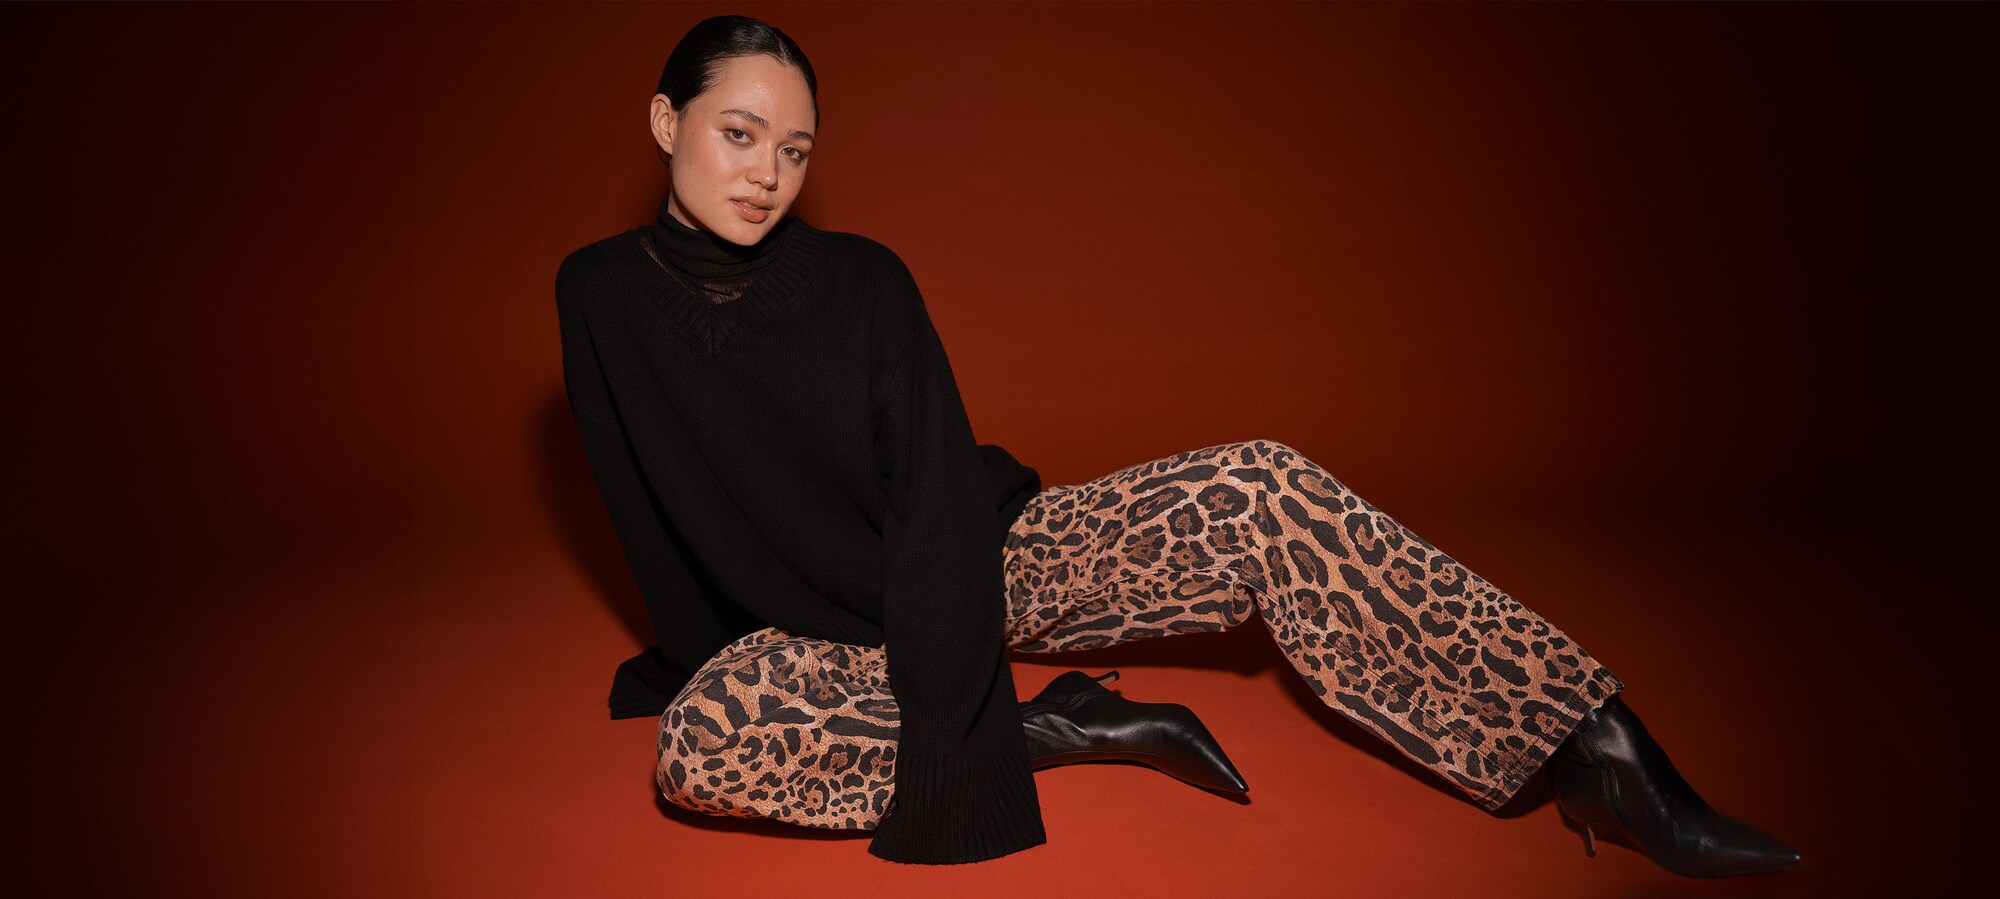 Osvoji ta trend Oblačila z leopardjim vzorcem